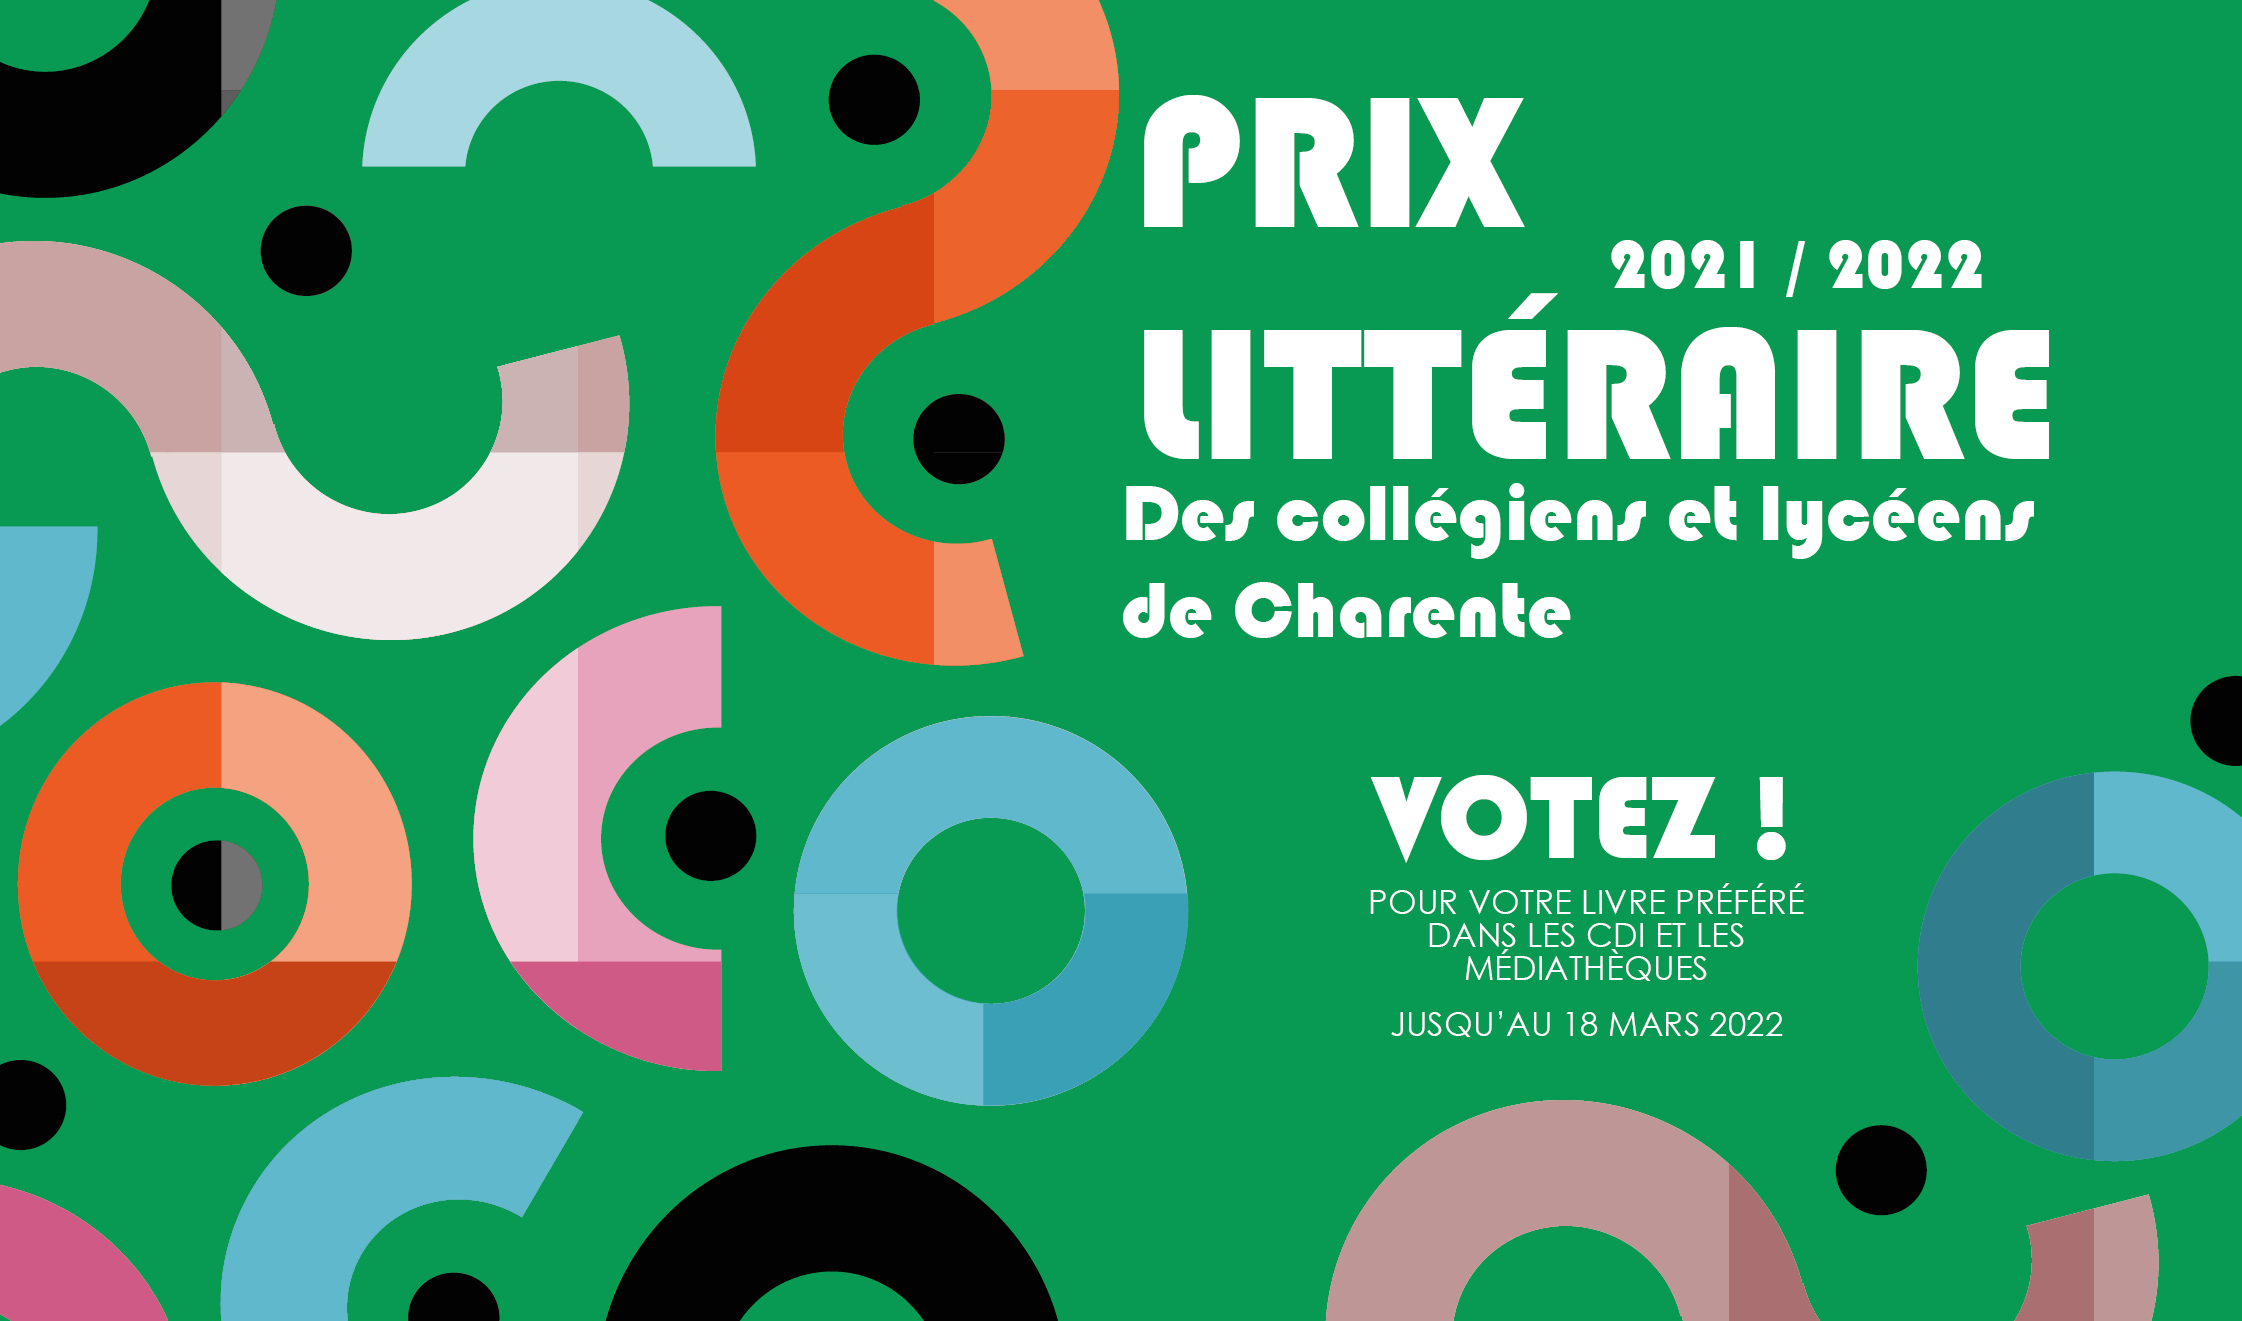 Prix des collégiens et lycéens de Charente 2021 2022